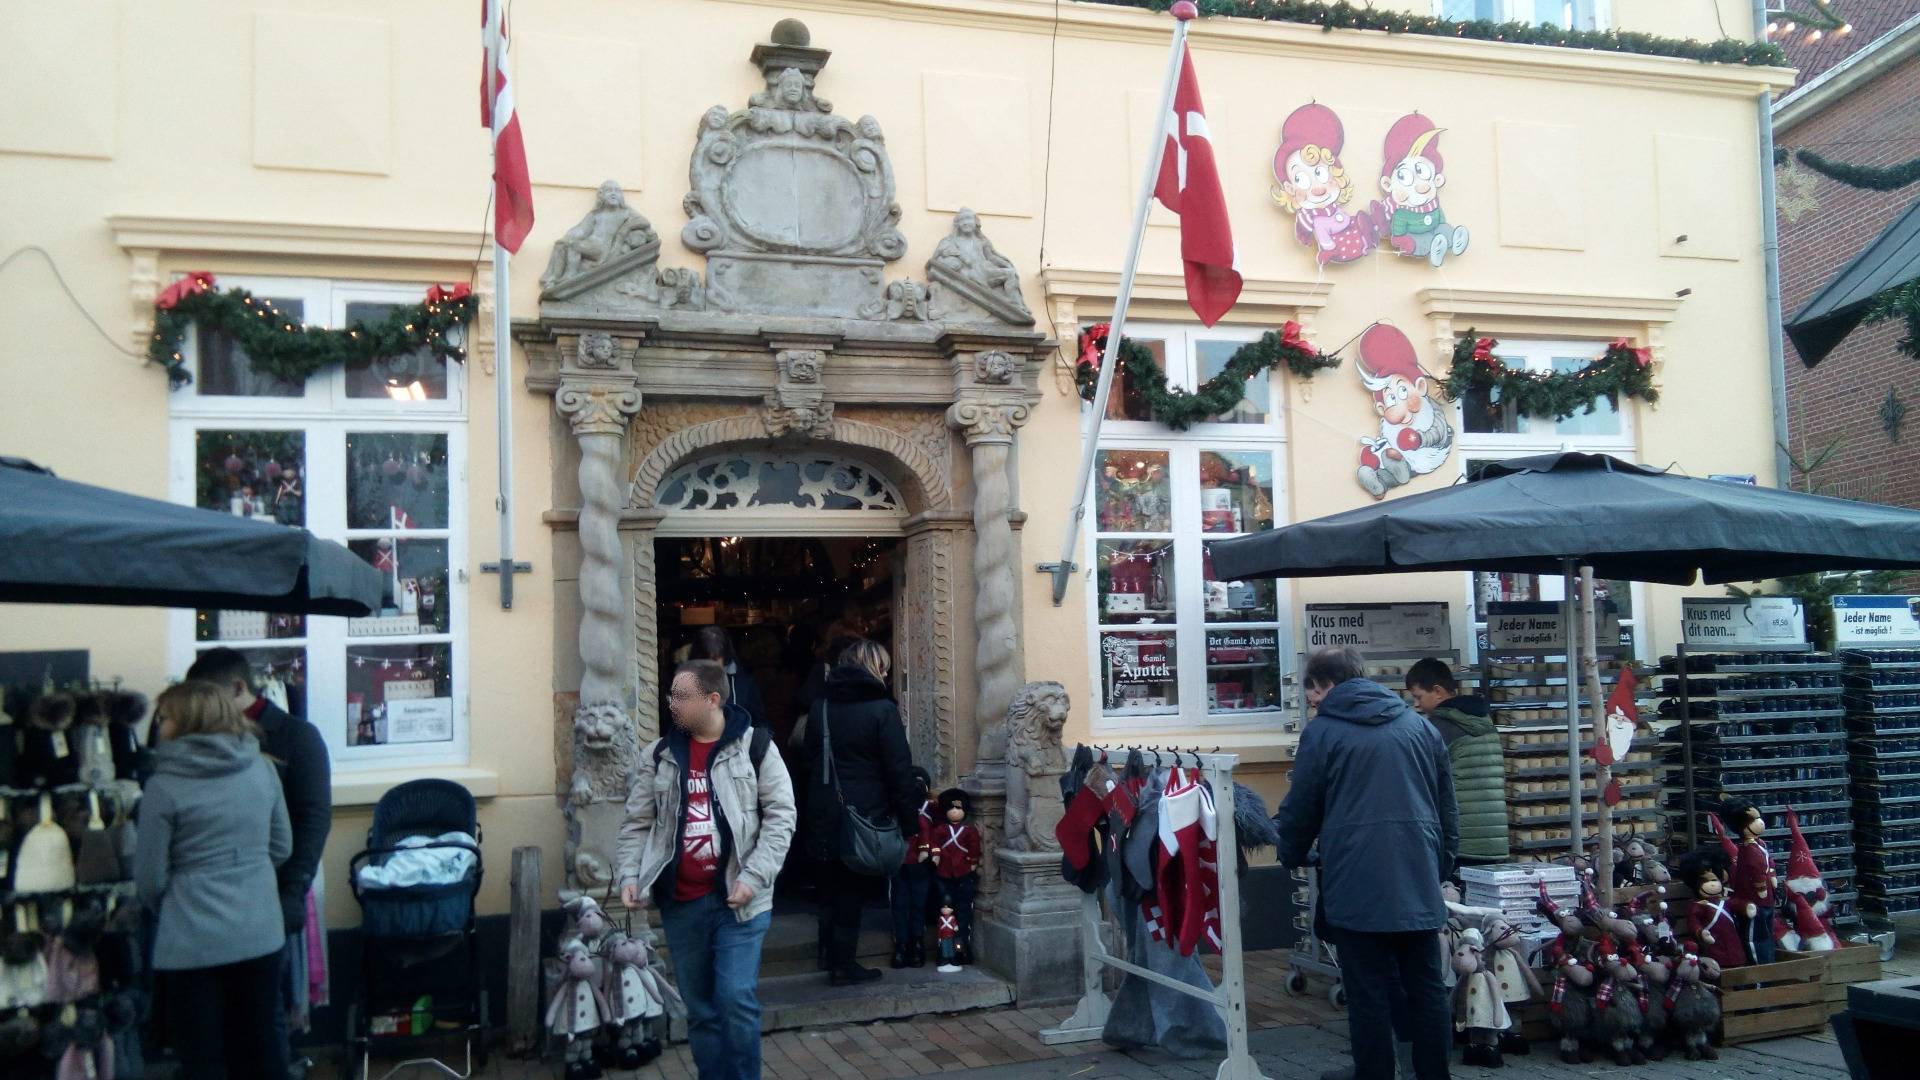 Det Gamle Apotek in Denmark's Christmas Town Tondern